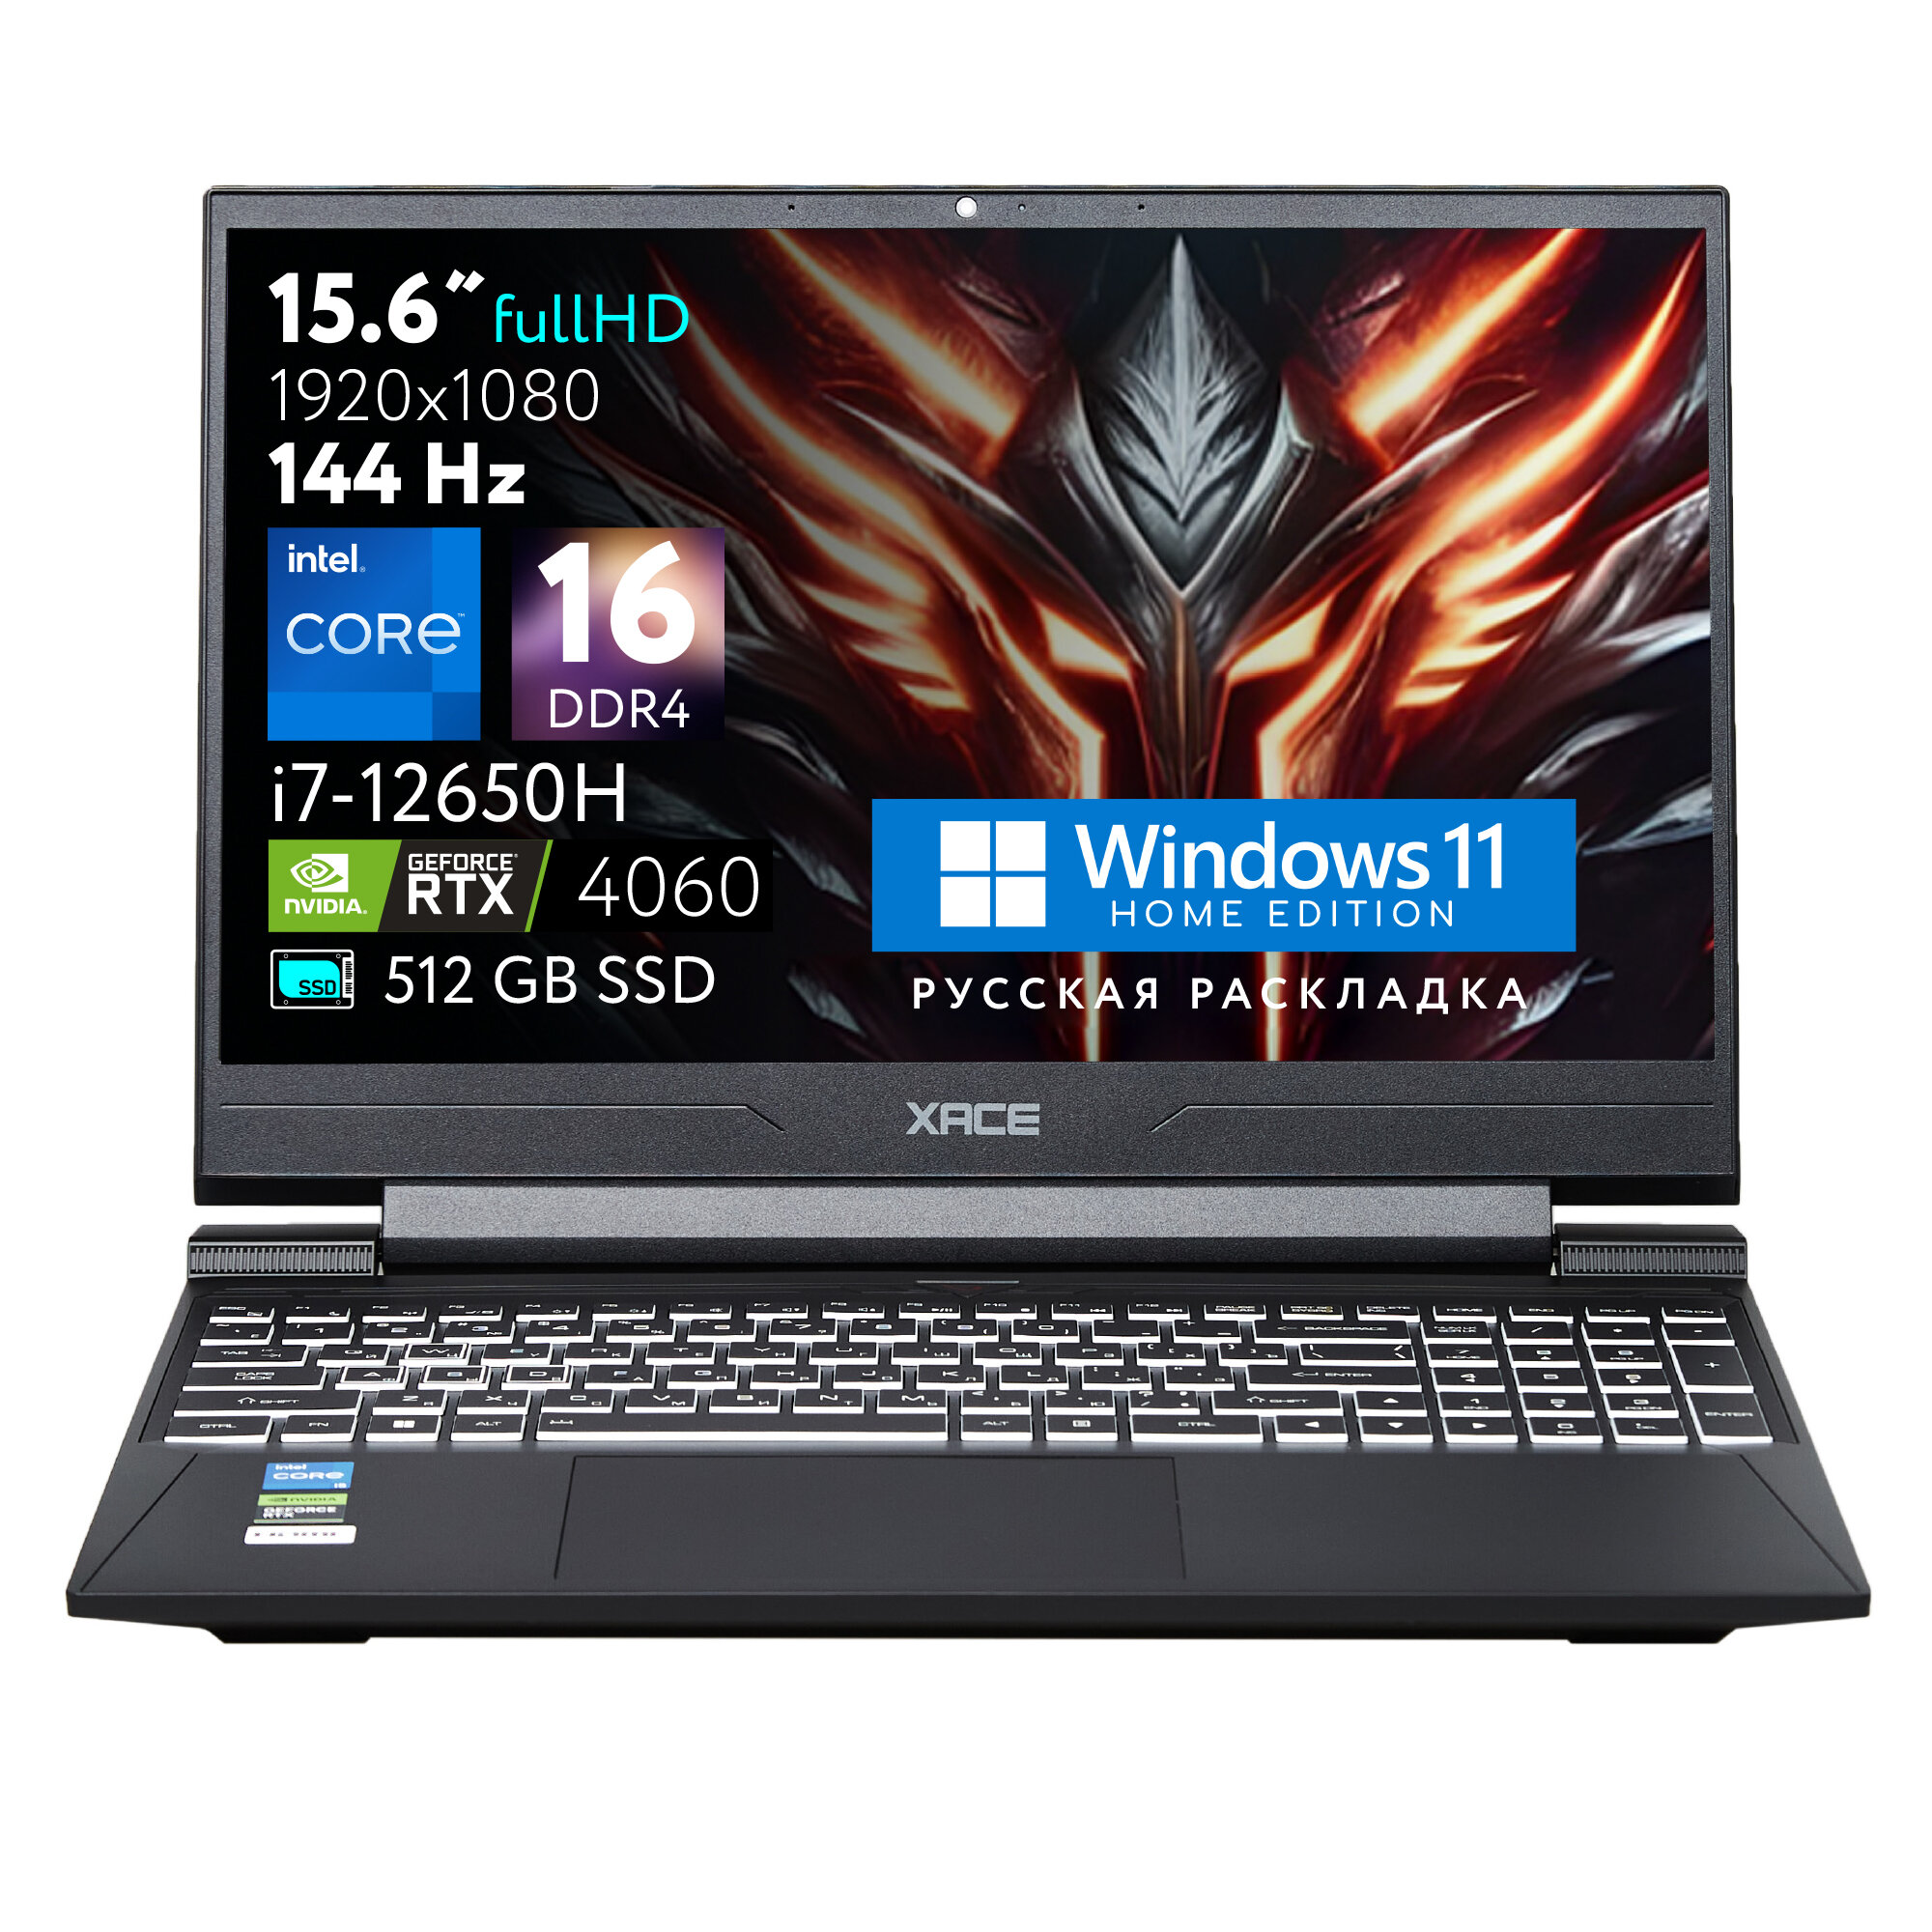 XACE S8 D62654FH Игровой ноутбук 15.6" FULL HD, Intel Core i7-12650H, RAM 16 ГБ, SSD 512 ГБ, RTX4060 8G GDDR6, Windows 11, Русская раскладка